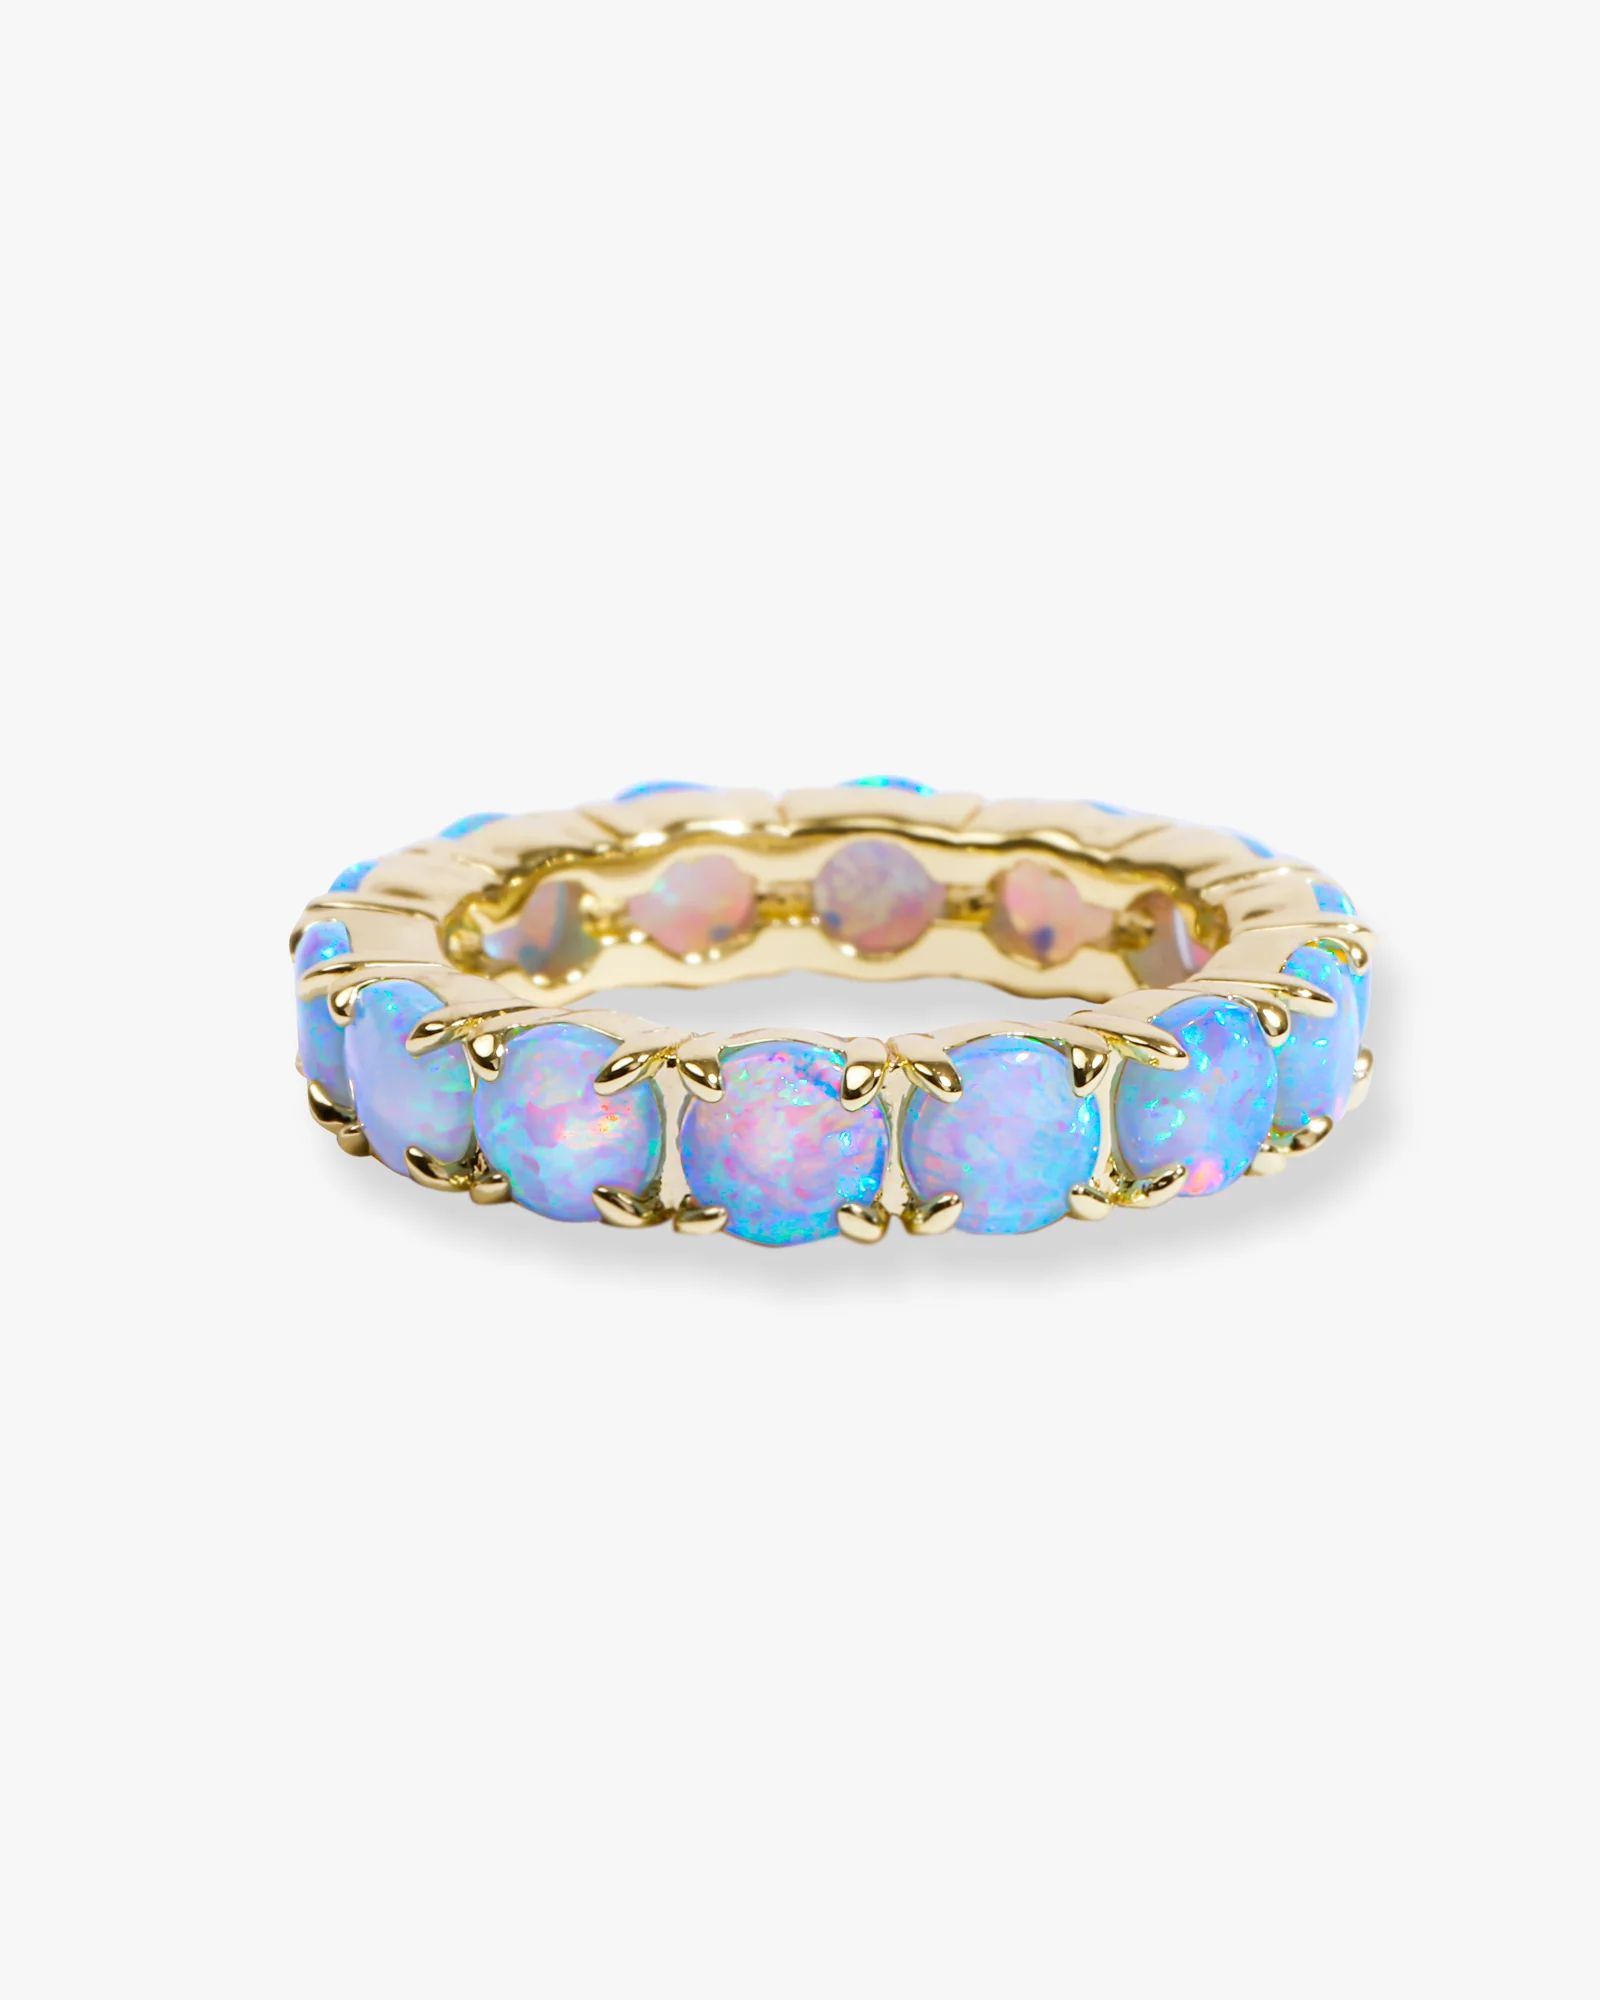 Grand Heiress Blue Opal Ring | Melinda Maria